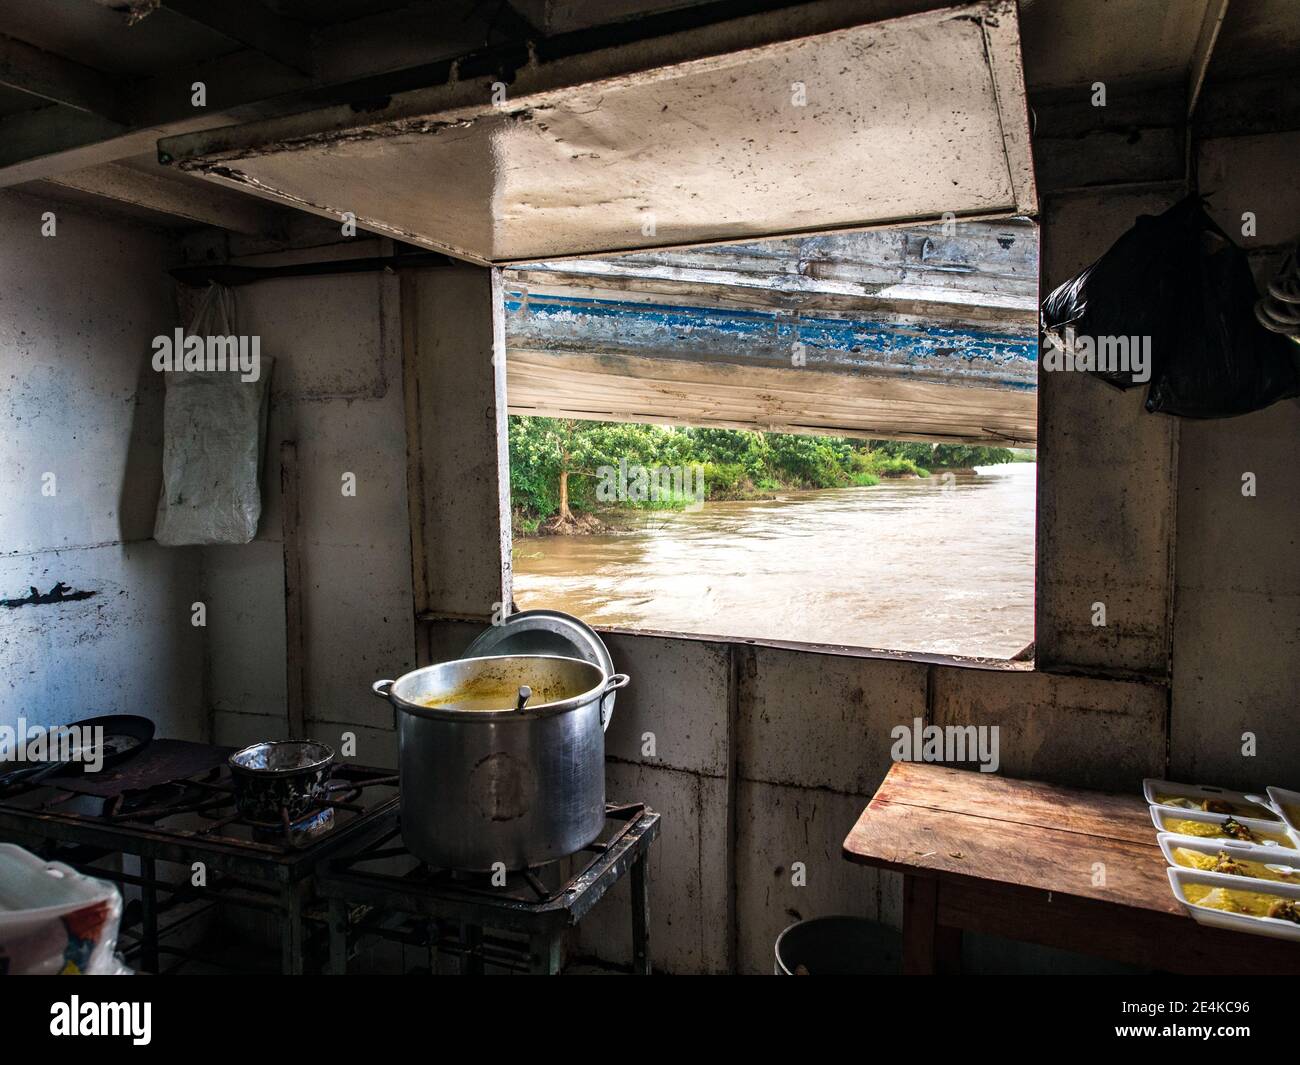 Rio delle Amazzoni, Perù - 2016 maggio: Cucina su una nave da carico che naviga da Santa Rosa a Iquitos, vista per il fiume Amazon attraverso la finestra, Perù. Amazzonia, L. Foto Stock